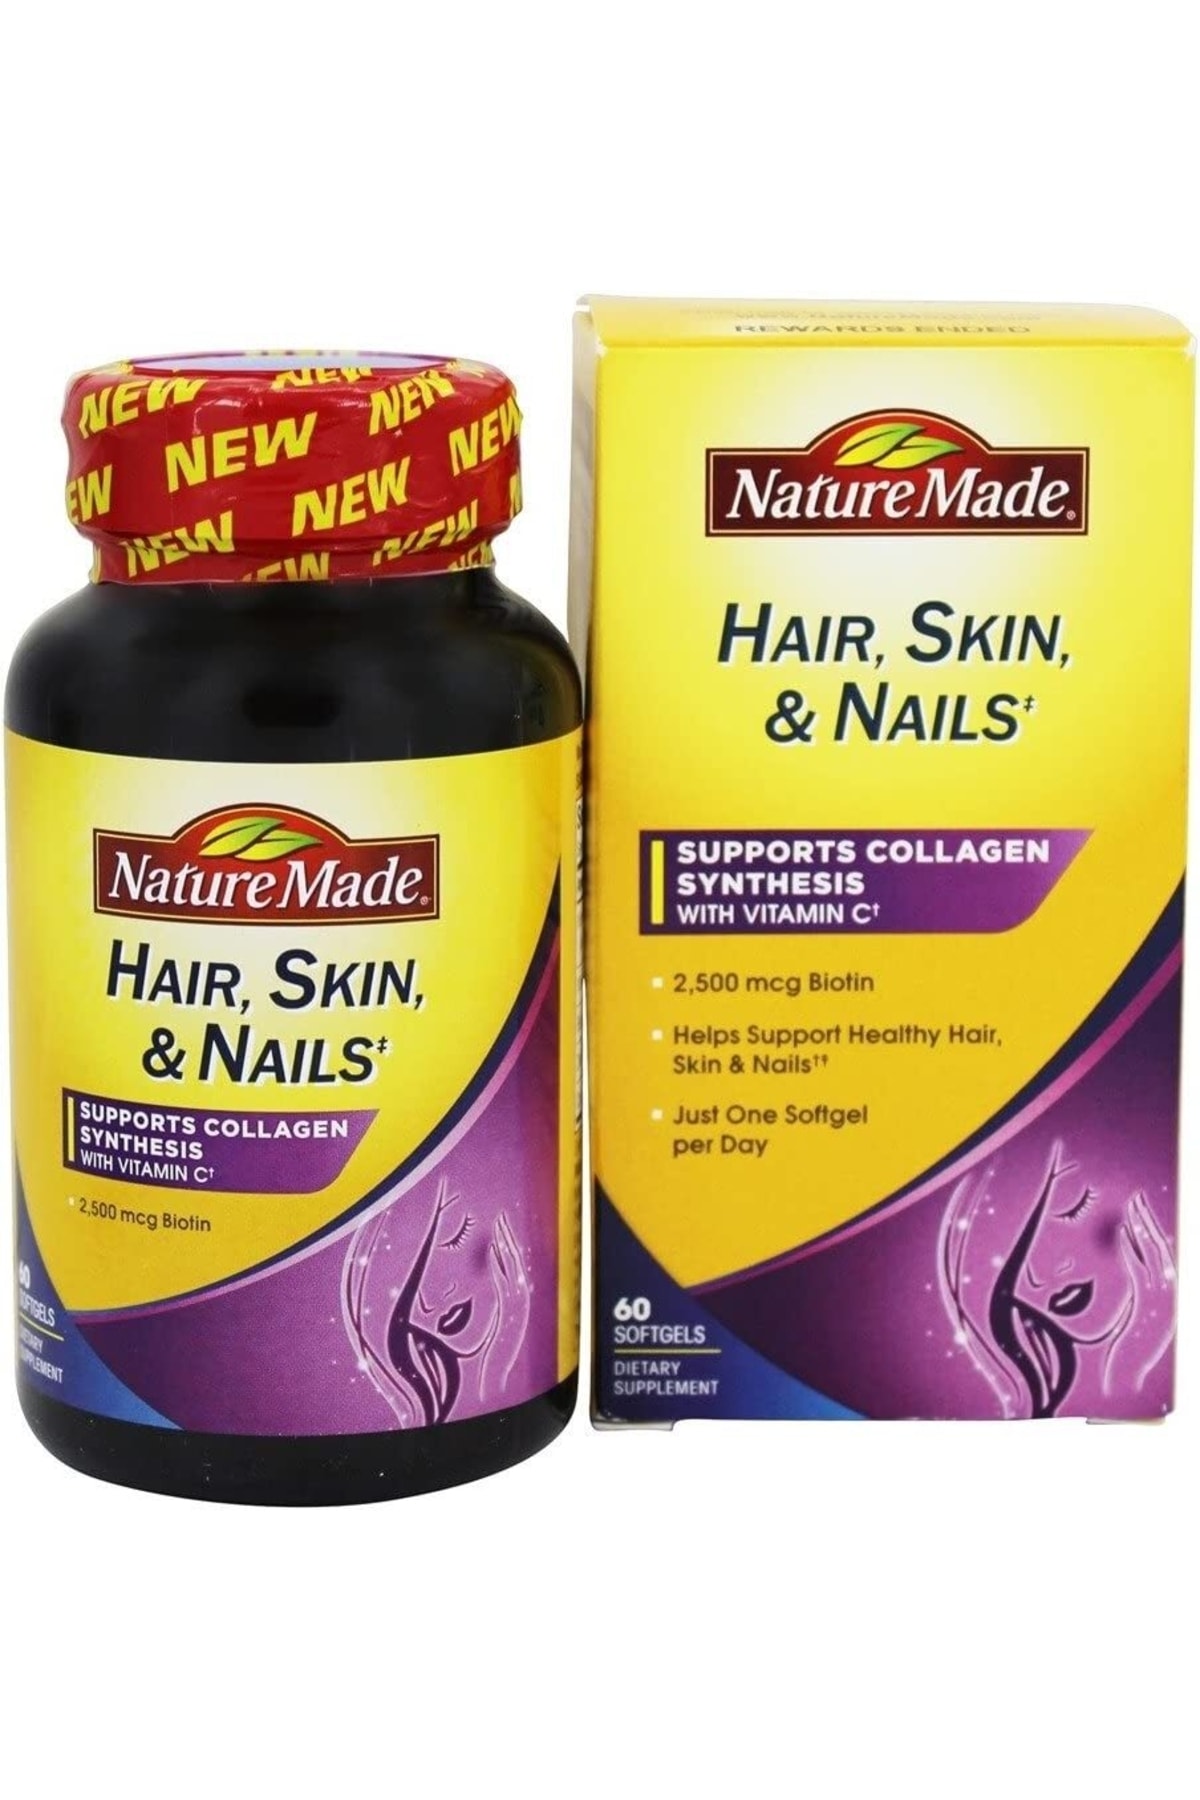 Natural Made Nature Made Hair Skin & Nails 60 Softgels